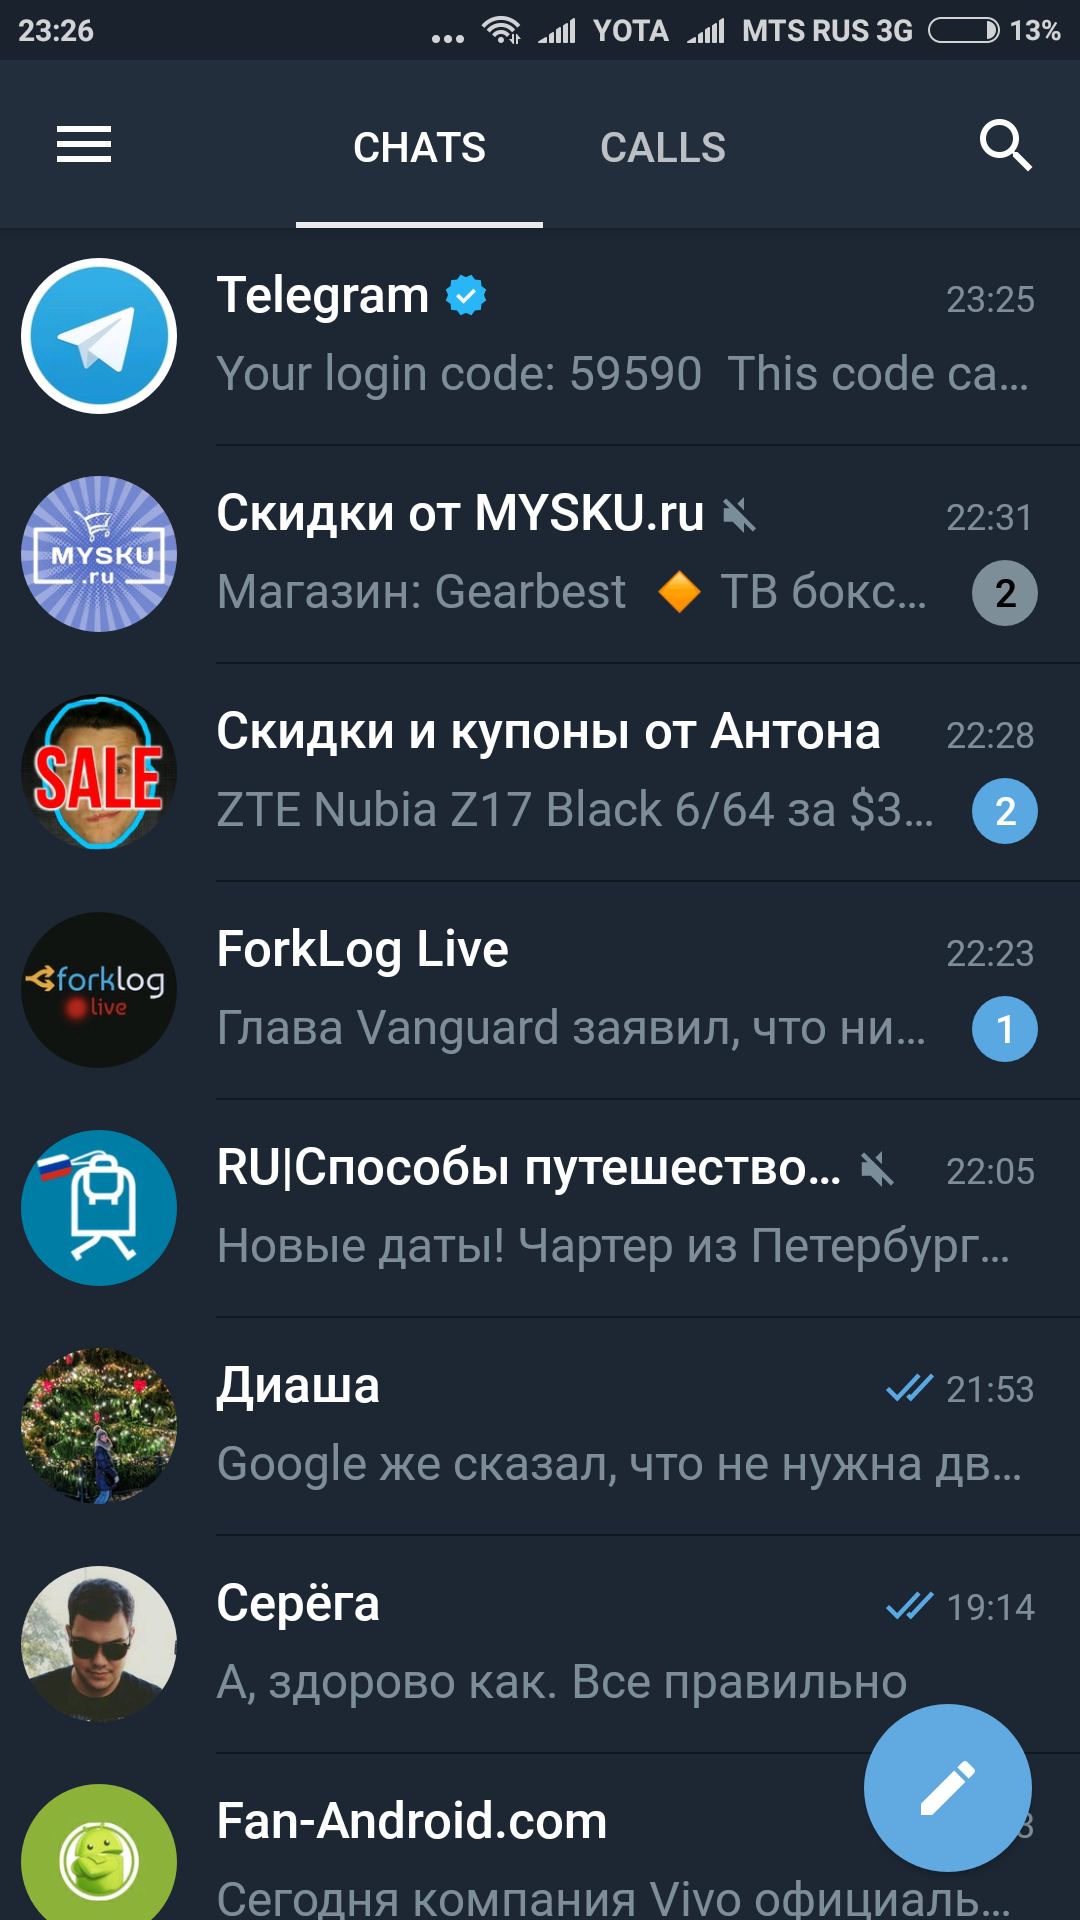 Скачать бесплатно телеграмм на андроид на русском языке последнюю версию с официального сайта фото 70